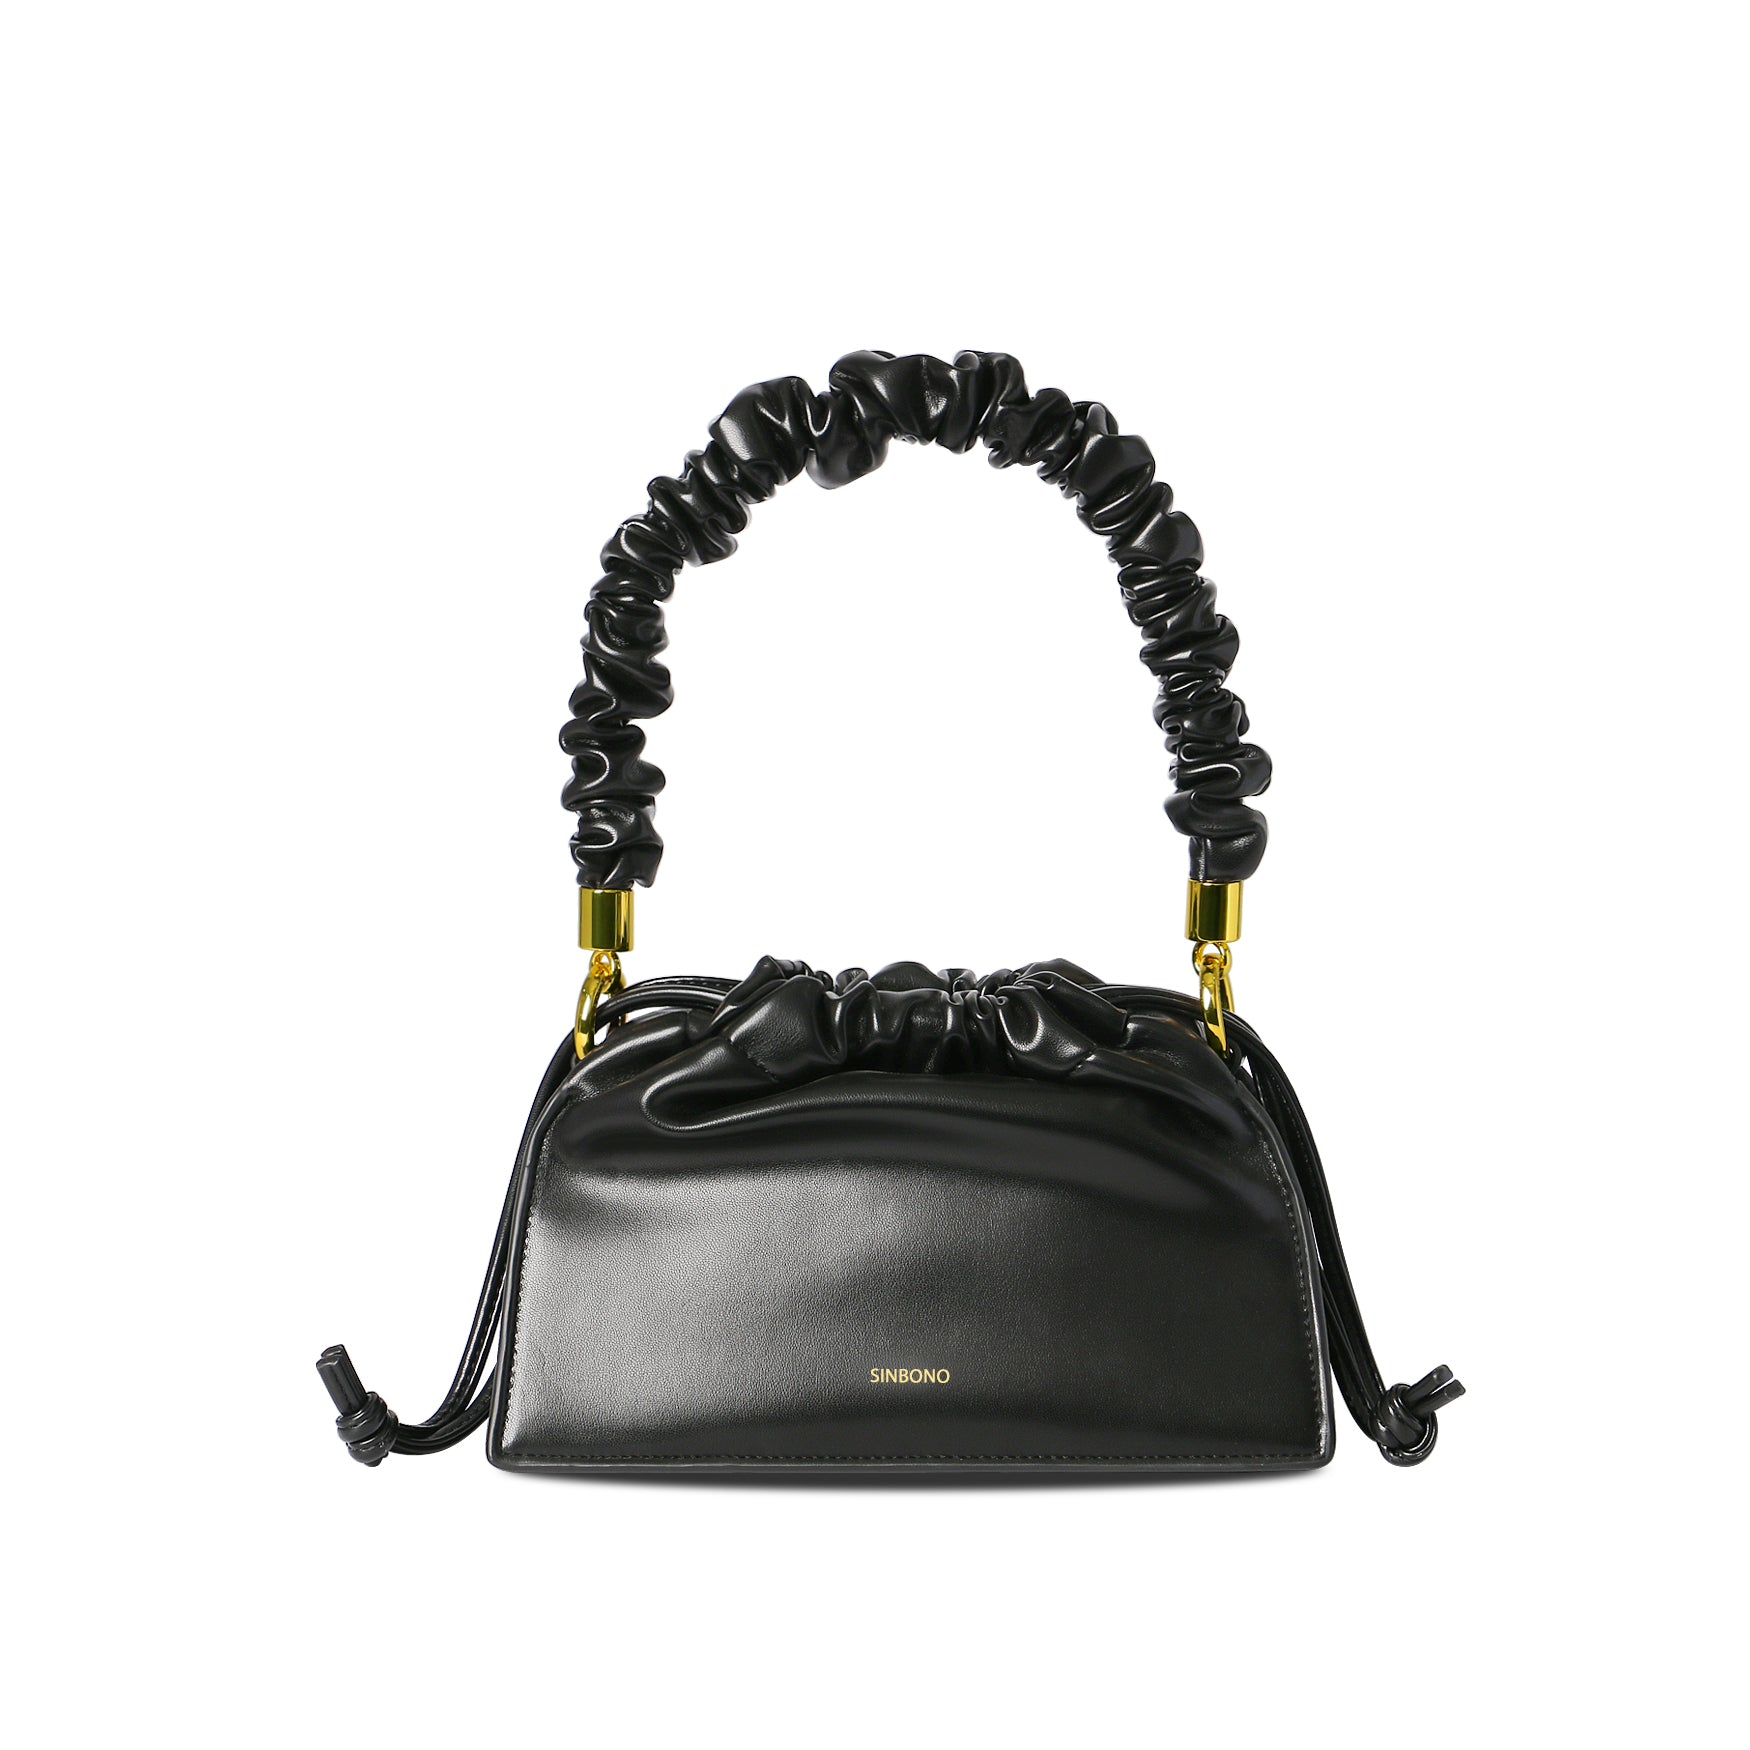 SINBONO - Drawstring Handbag -Black